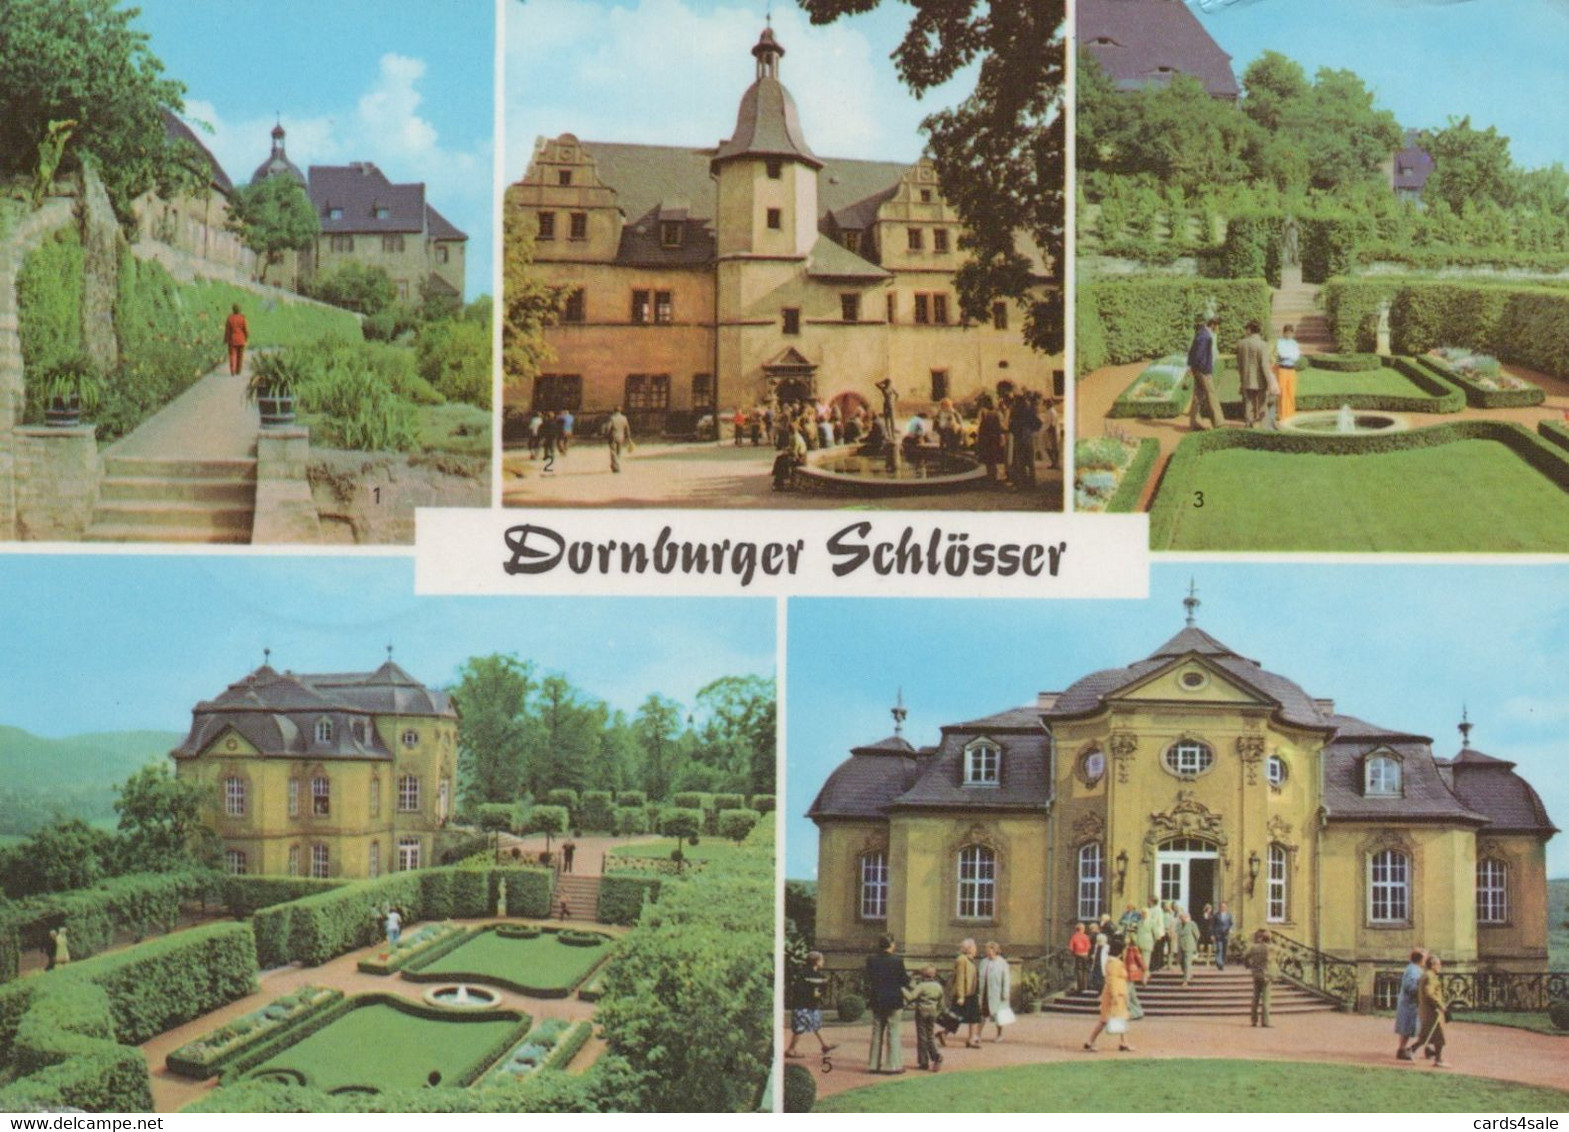 Dornburger Schlosser Im Saaletal Bei Jena - Burgenland